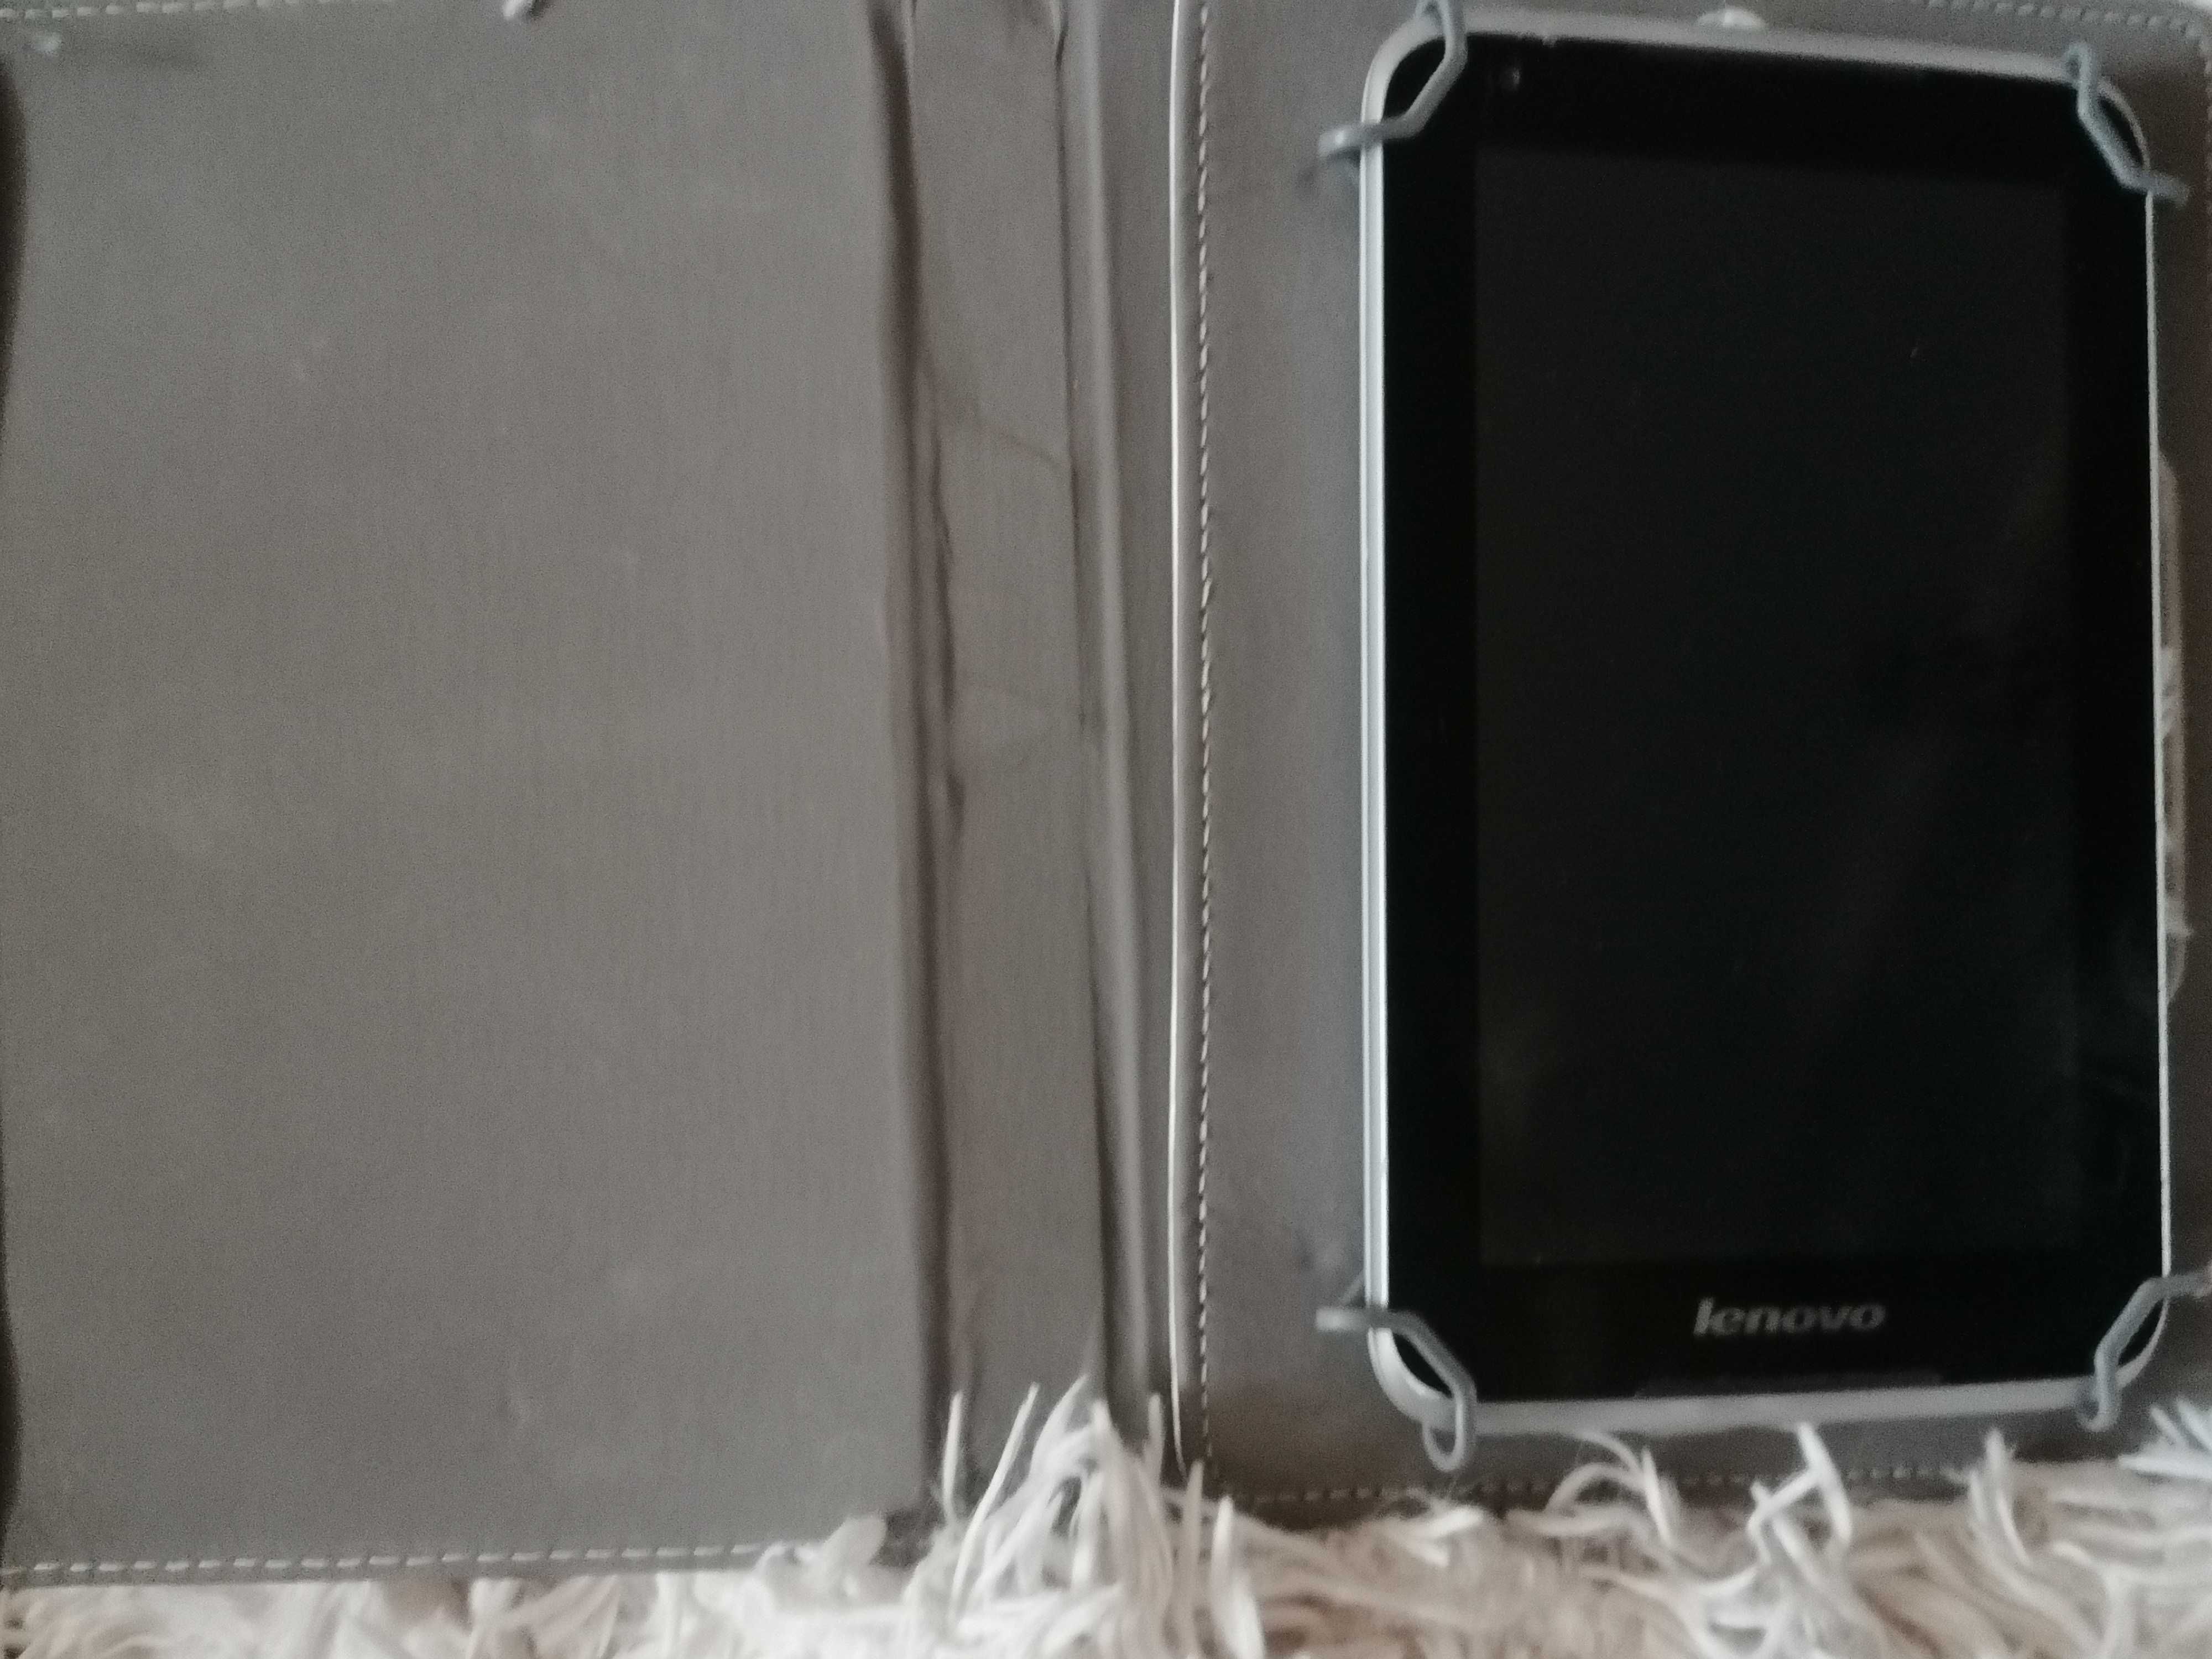 Tablet Lenovo IdeaTab 7.0 z etui/ stojakiem w kolorze białym